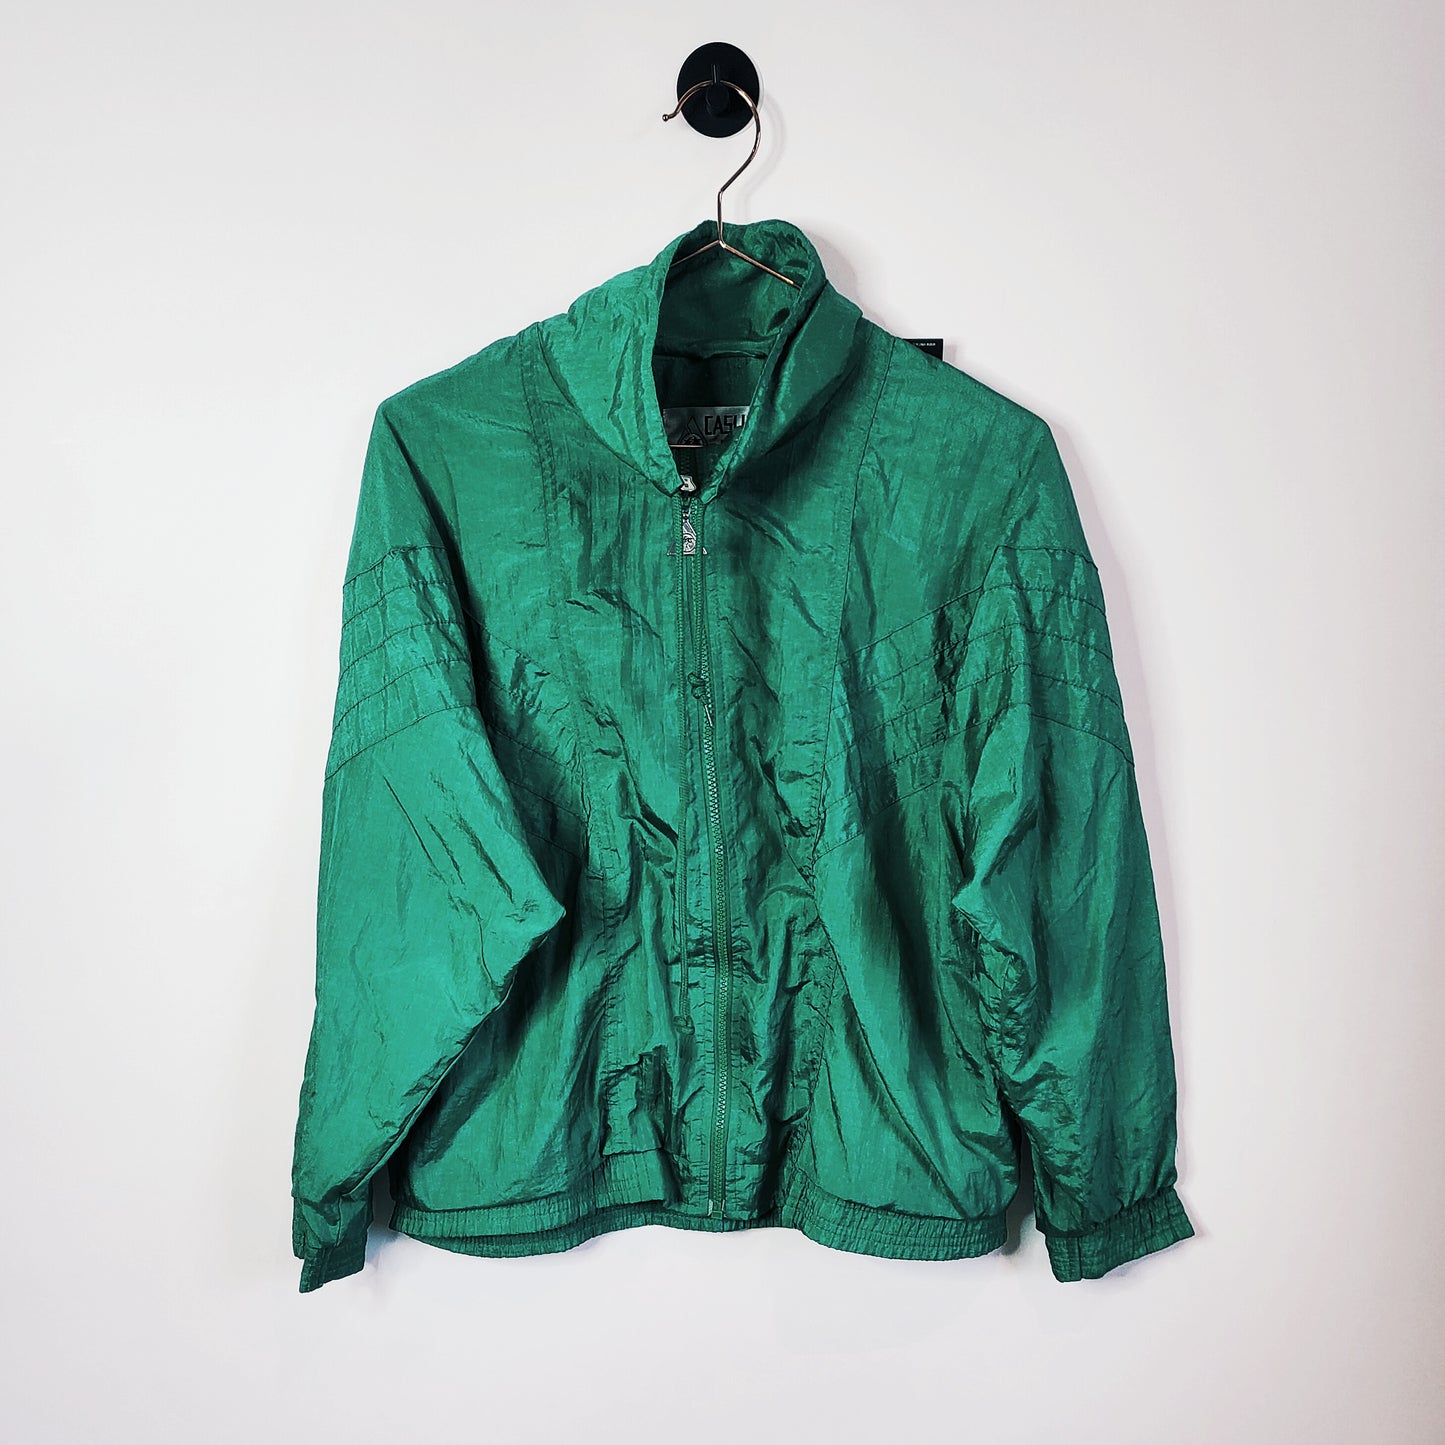 Vintage 90s Windbreaker Jacket Size 8-10 Green